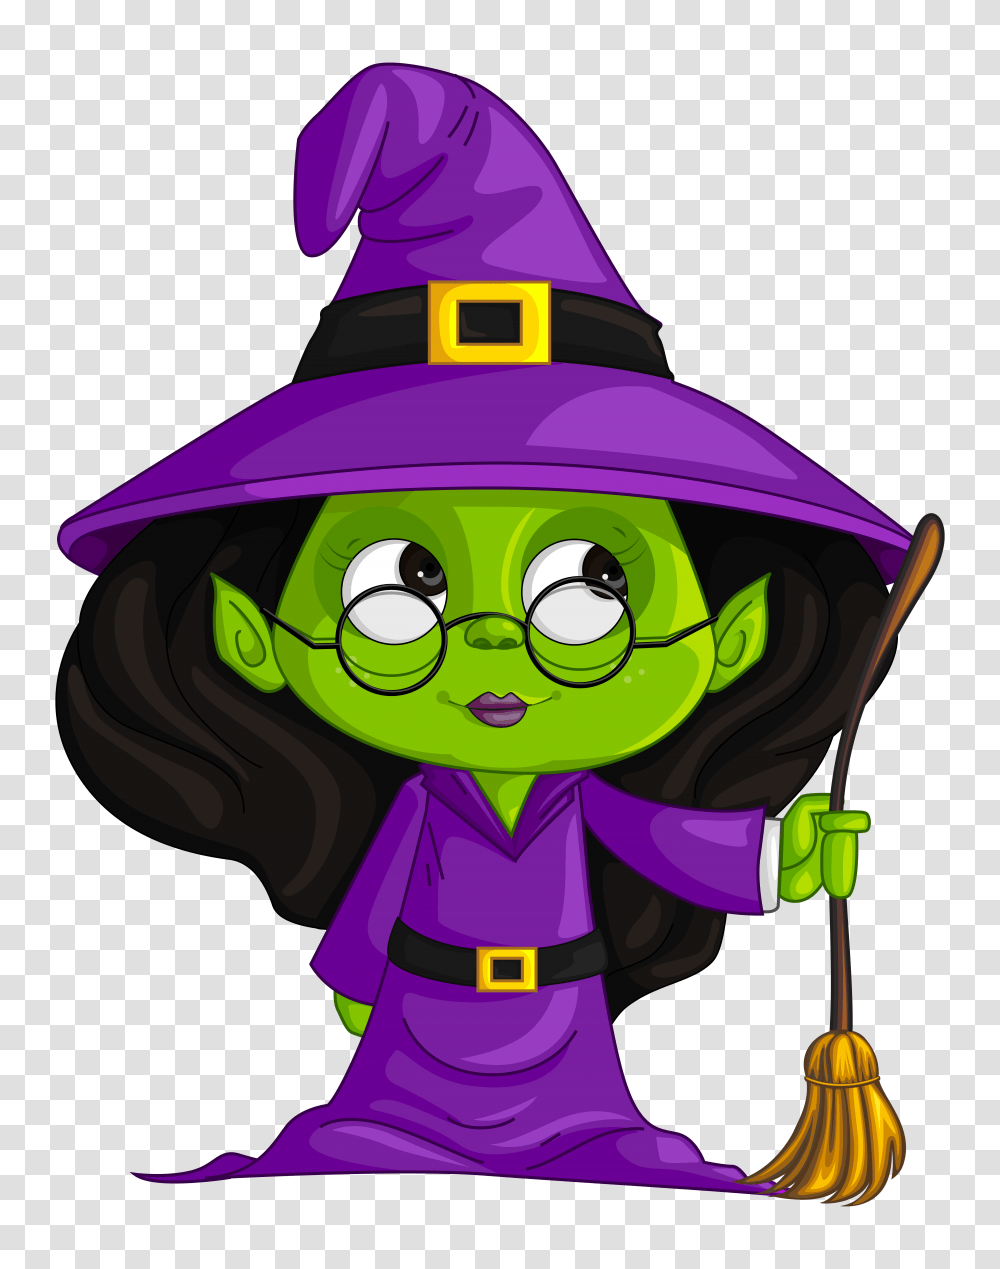 Purple Witch Clipart, Apparel, Helmet, Hat Transparent Png